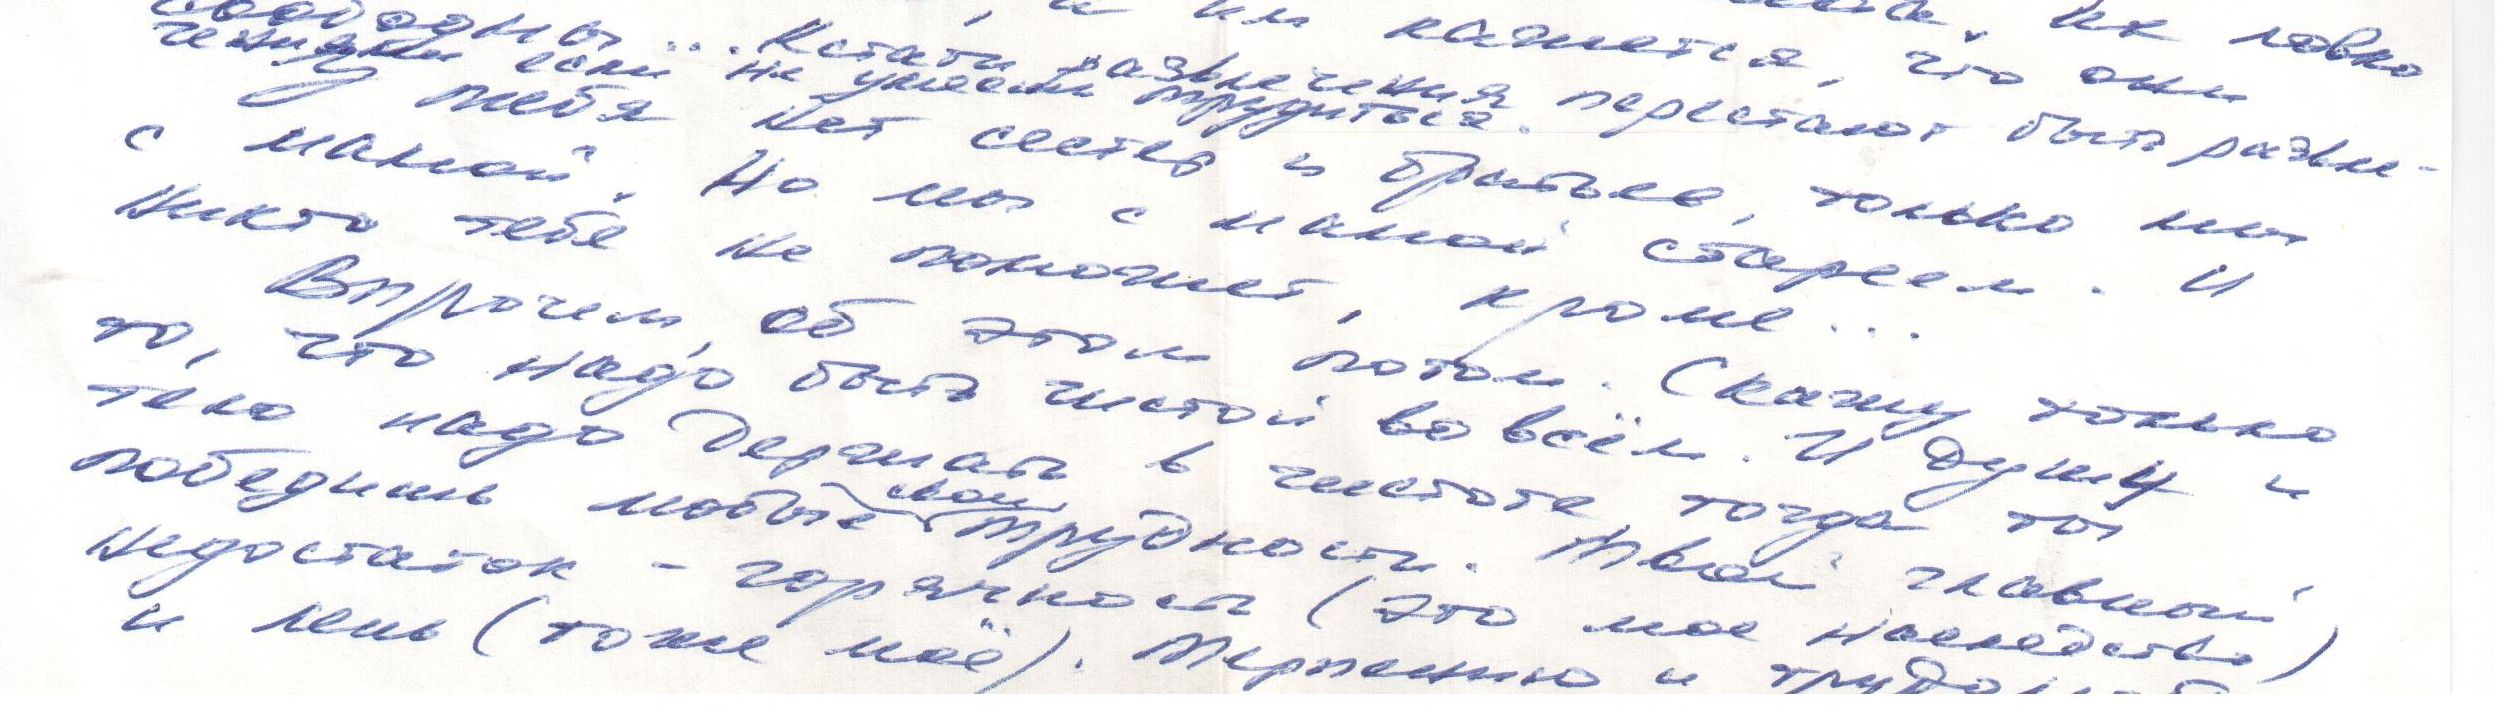 Отрывок из письма В.И.Белова, в котором писатель дает напутствия дочери (1988 г.). Из фондов Музея-квартиры В.И.Белова